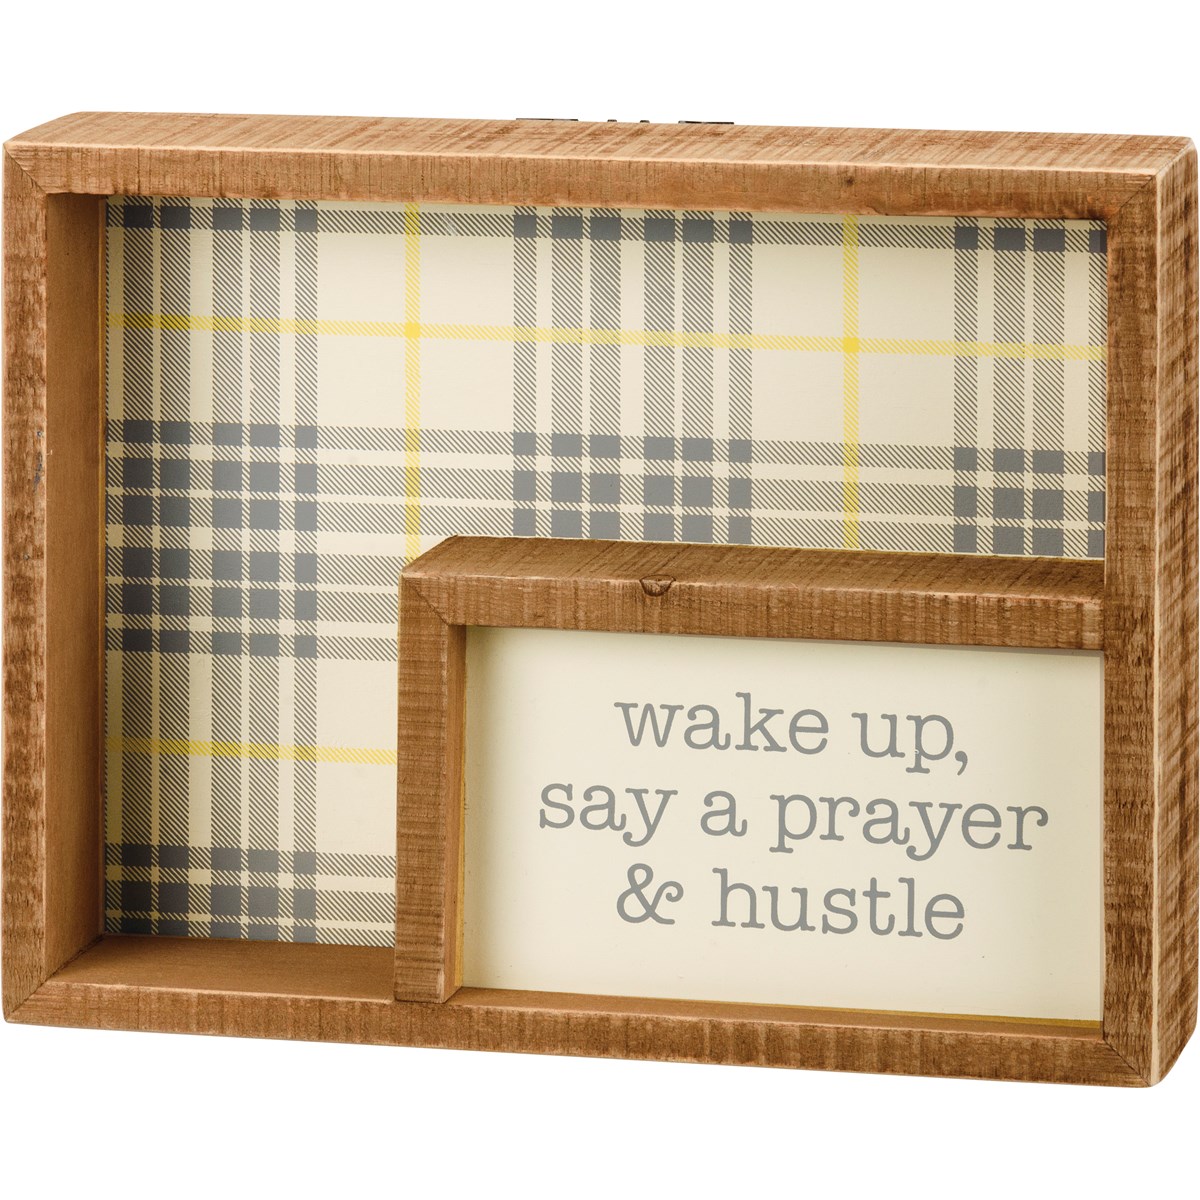 Wake Up Say A Prayer & Hustle Inset Box Sign - Wood